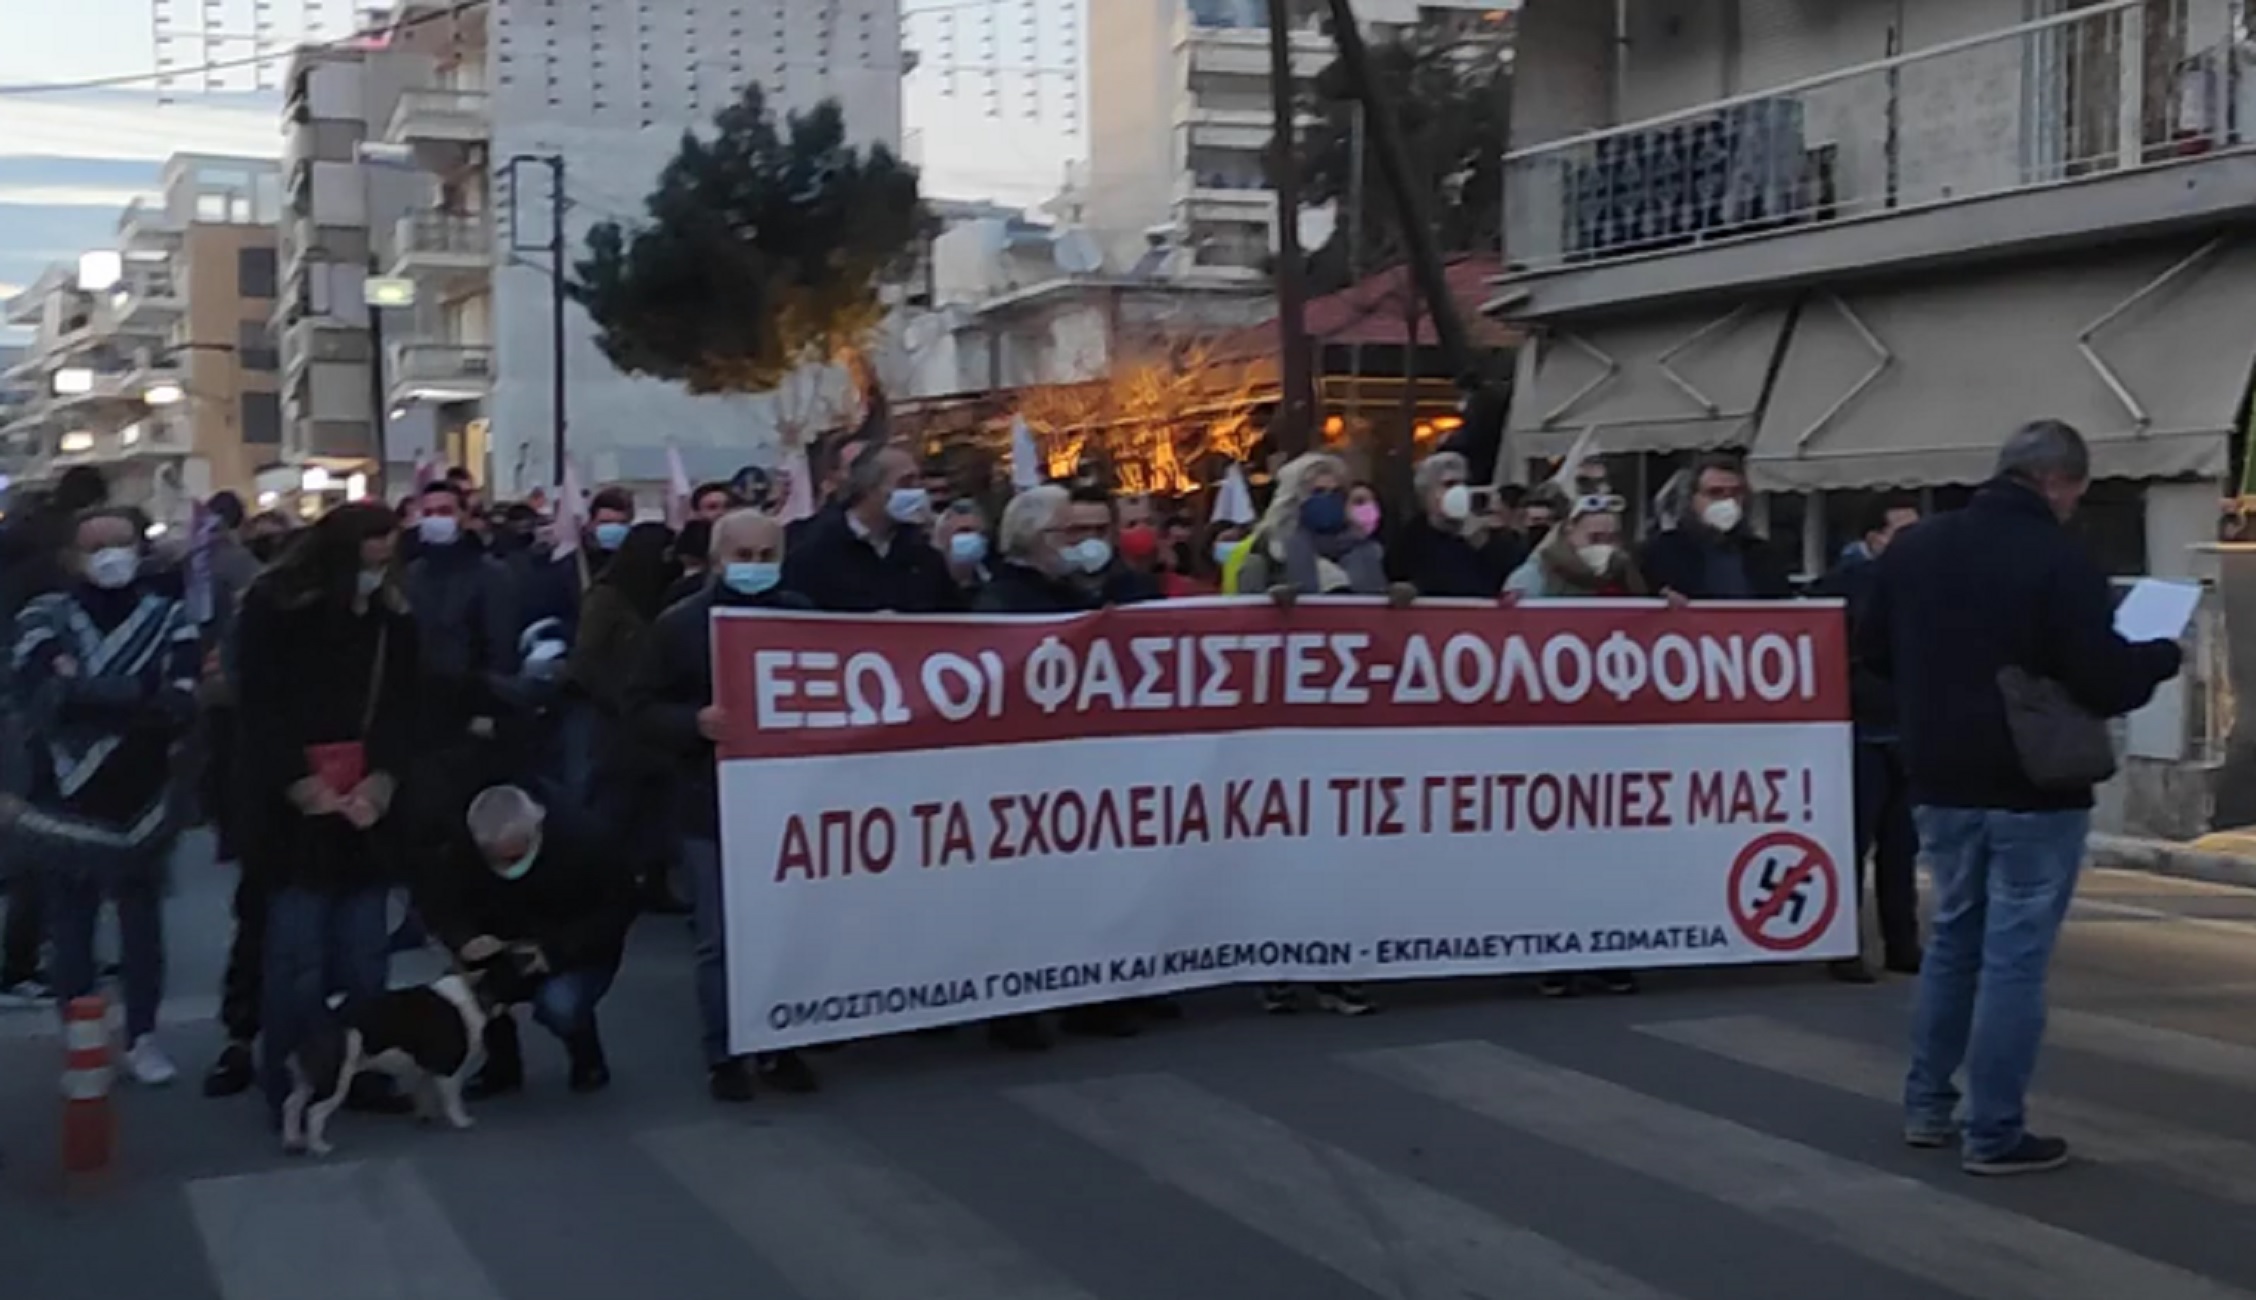 Θεσσαλονίκη: Αντιφασιστική πορεία με μηνύματα και ομιλίες μαθητών για τη δολοφονία του 19χρονου Άλκη